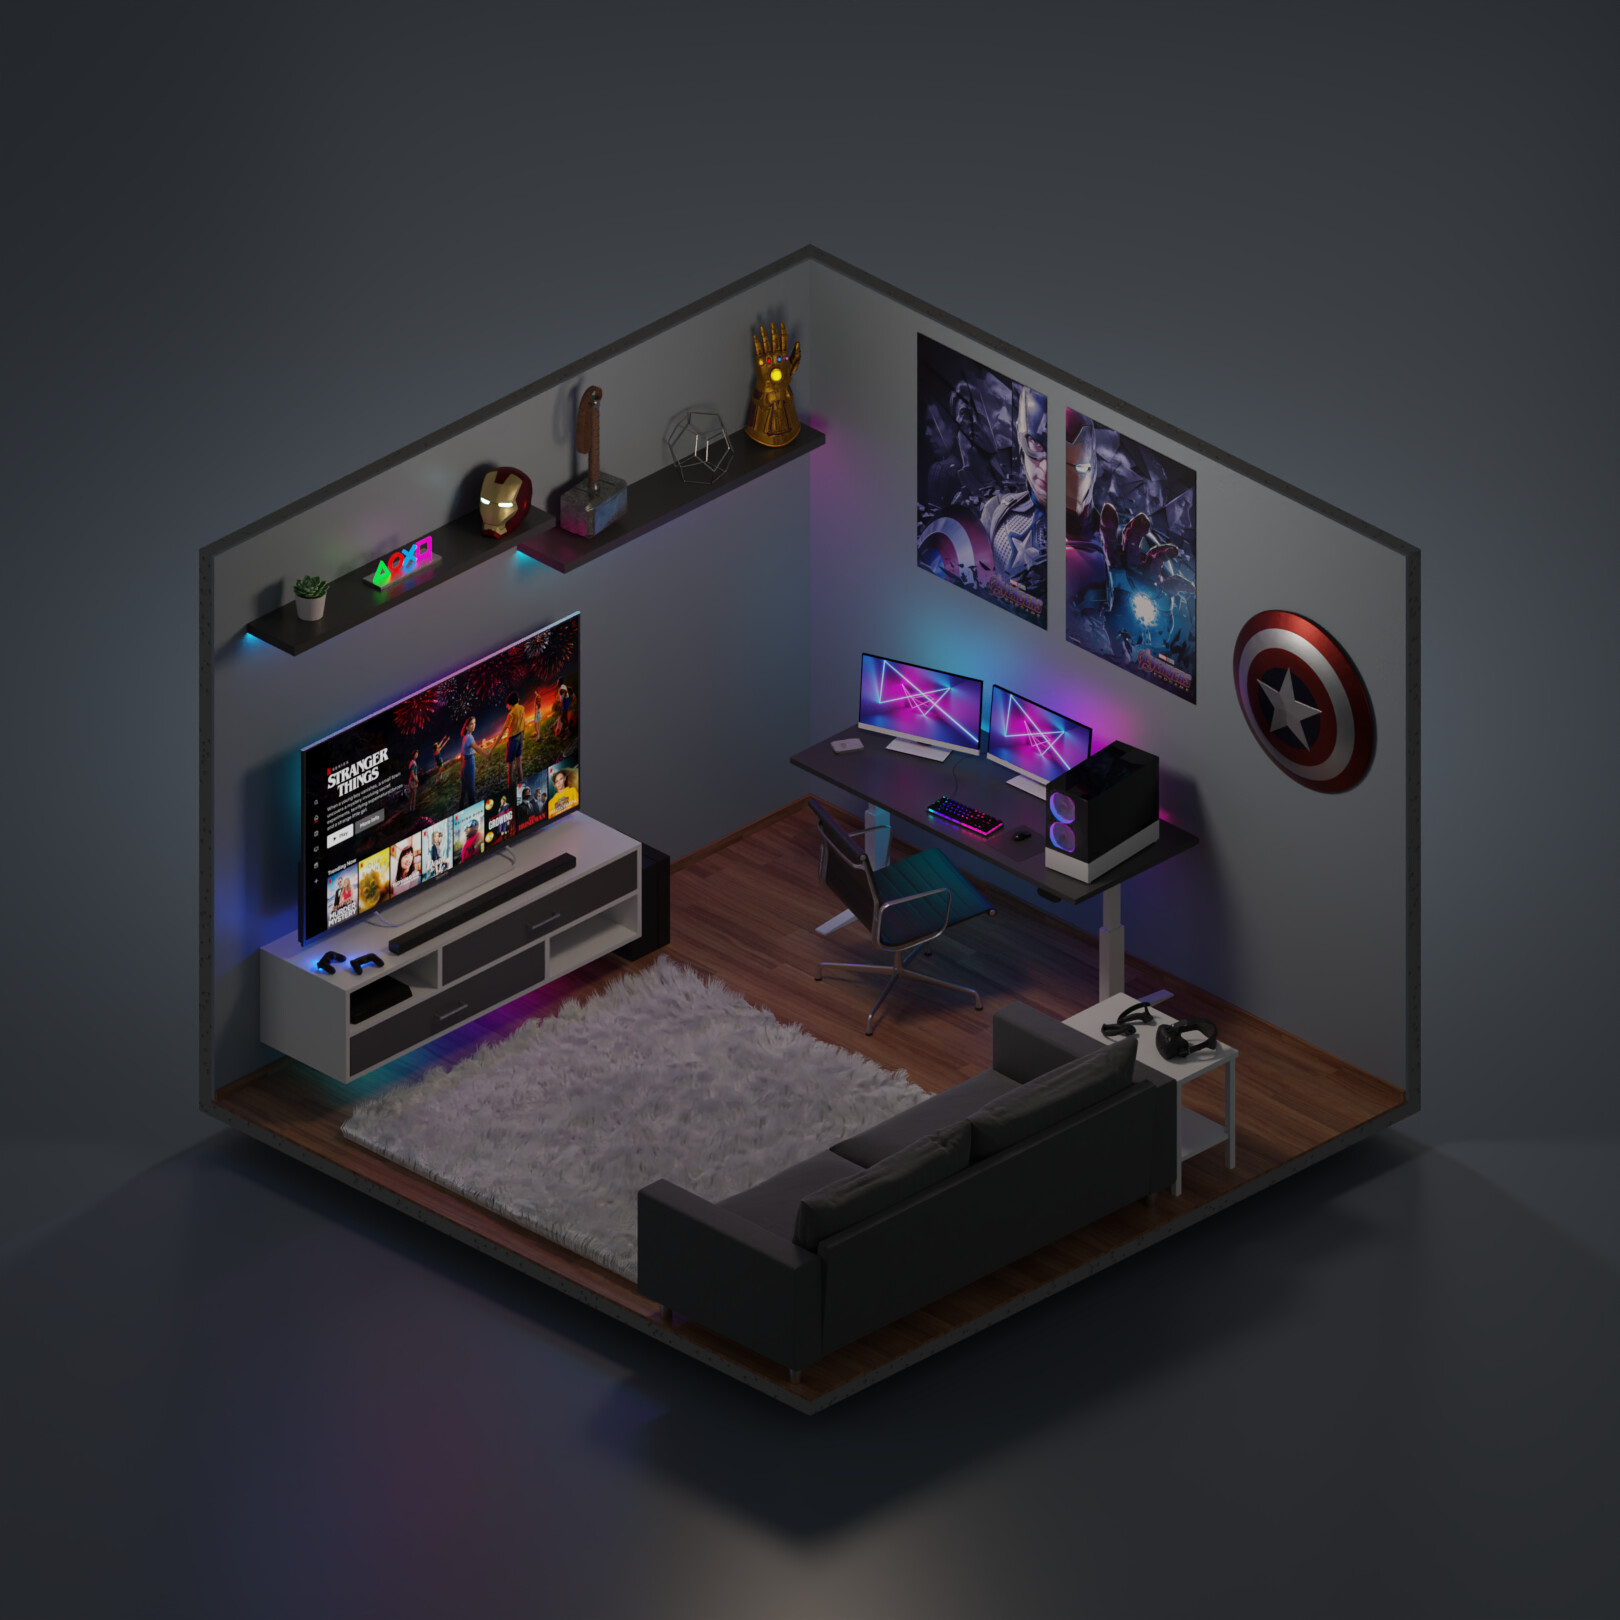 ArtStation - Gamer bedroom